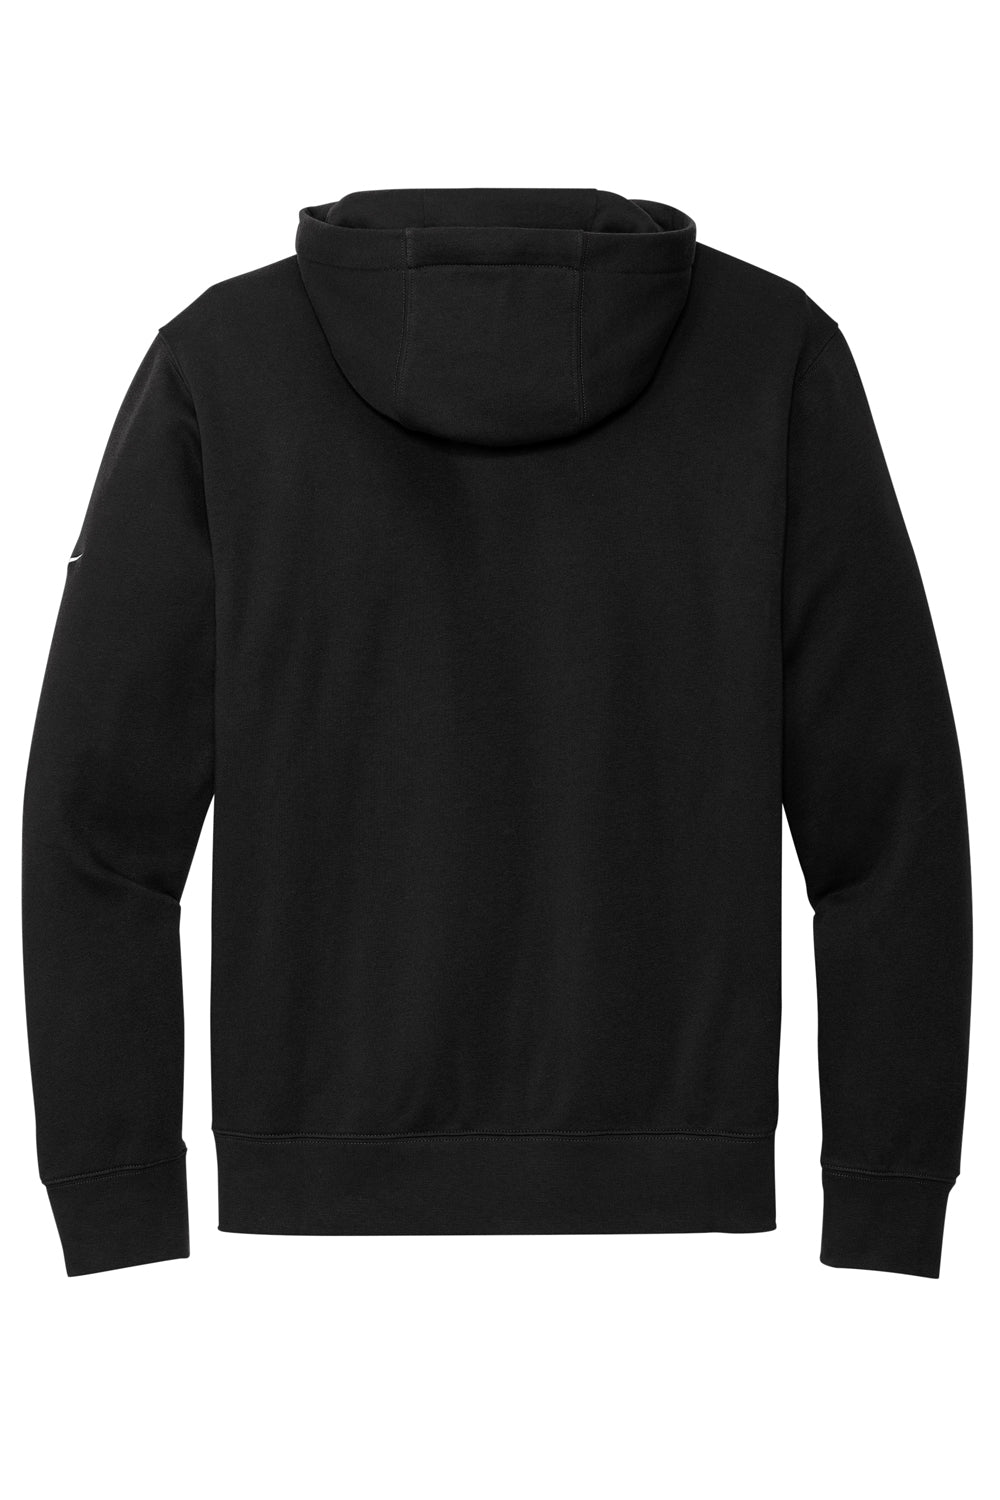 Nike NKDR1499 Mens Club Fleece Hooded Sweatshirt Hoodie Black Flat Back